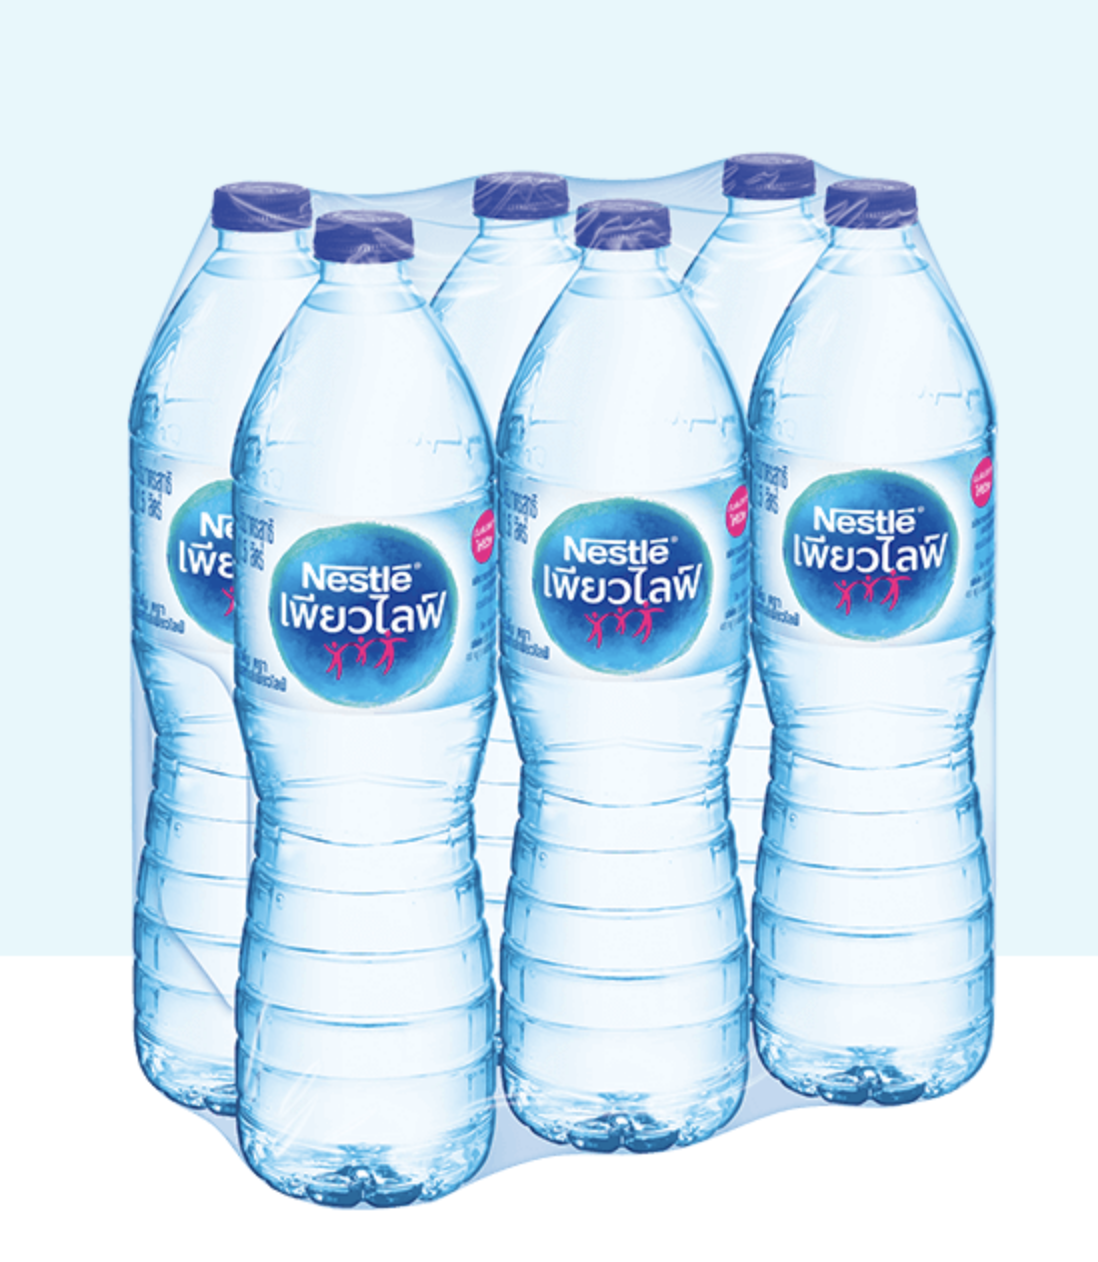 น้ำดื่ม Nestle เนสท์เล่ เพียวไลฟ์ ขนาด 1500ml ยกแพ็ค 6ขวด น้ำดื่มคุณภาพจากแหล่งน้ำใต้ดินธรรมชาติ